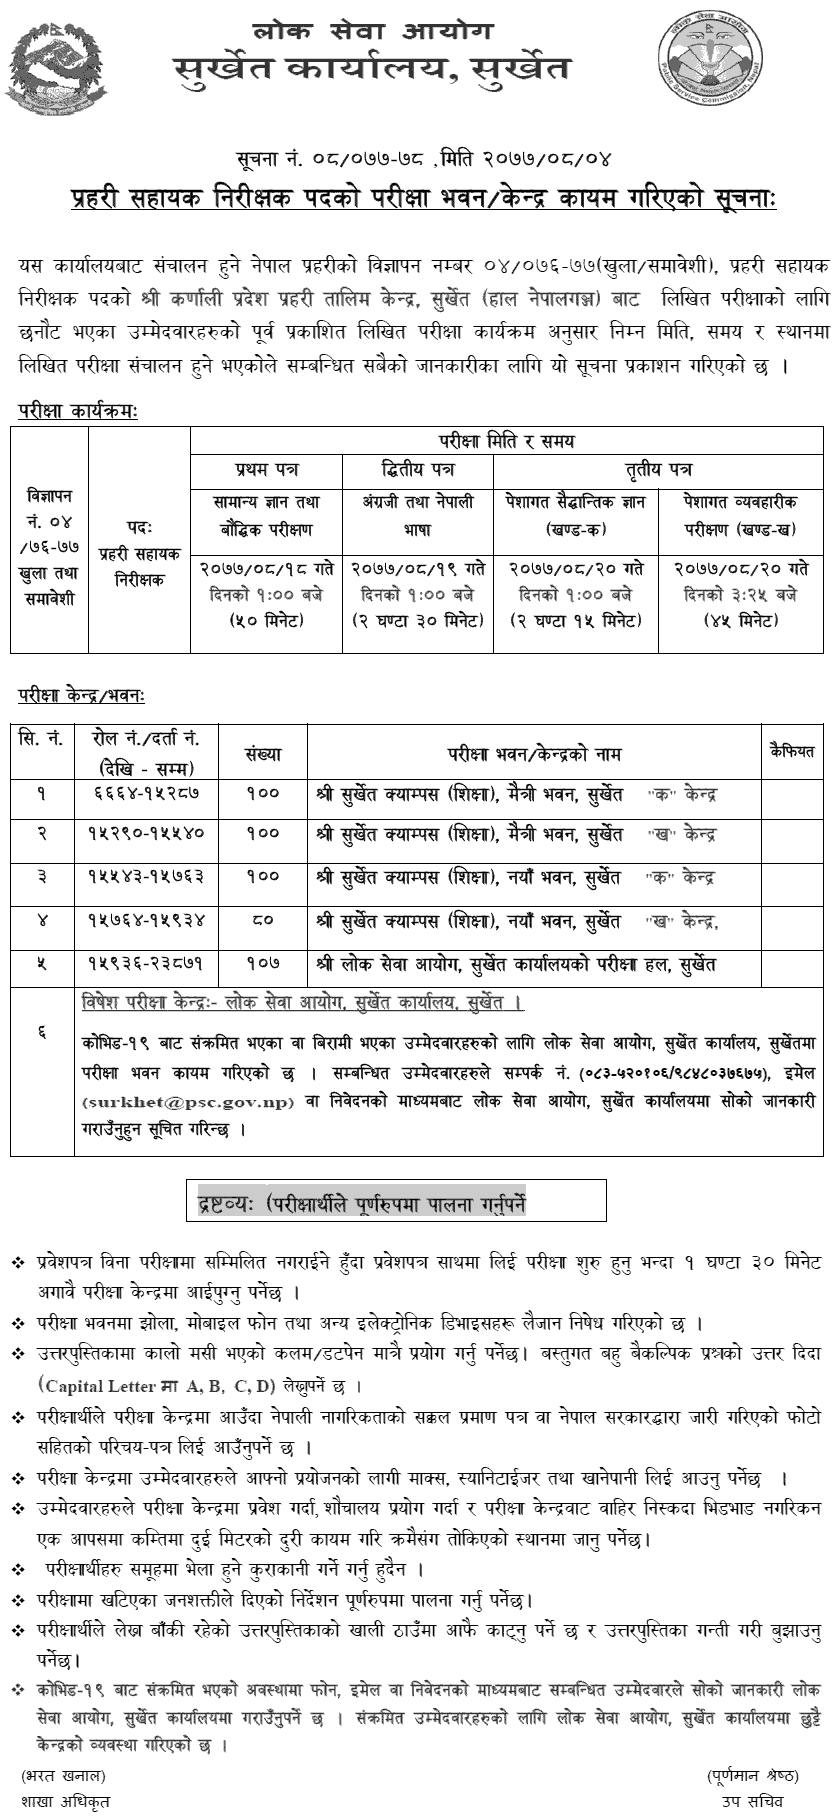 Nepal Police ASI Written Exam Center Surkhet